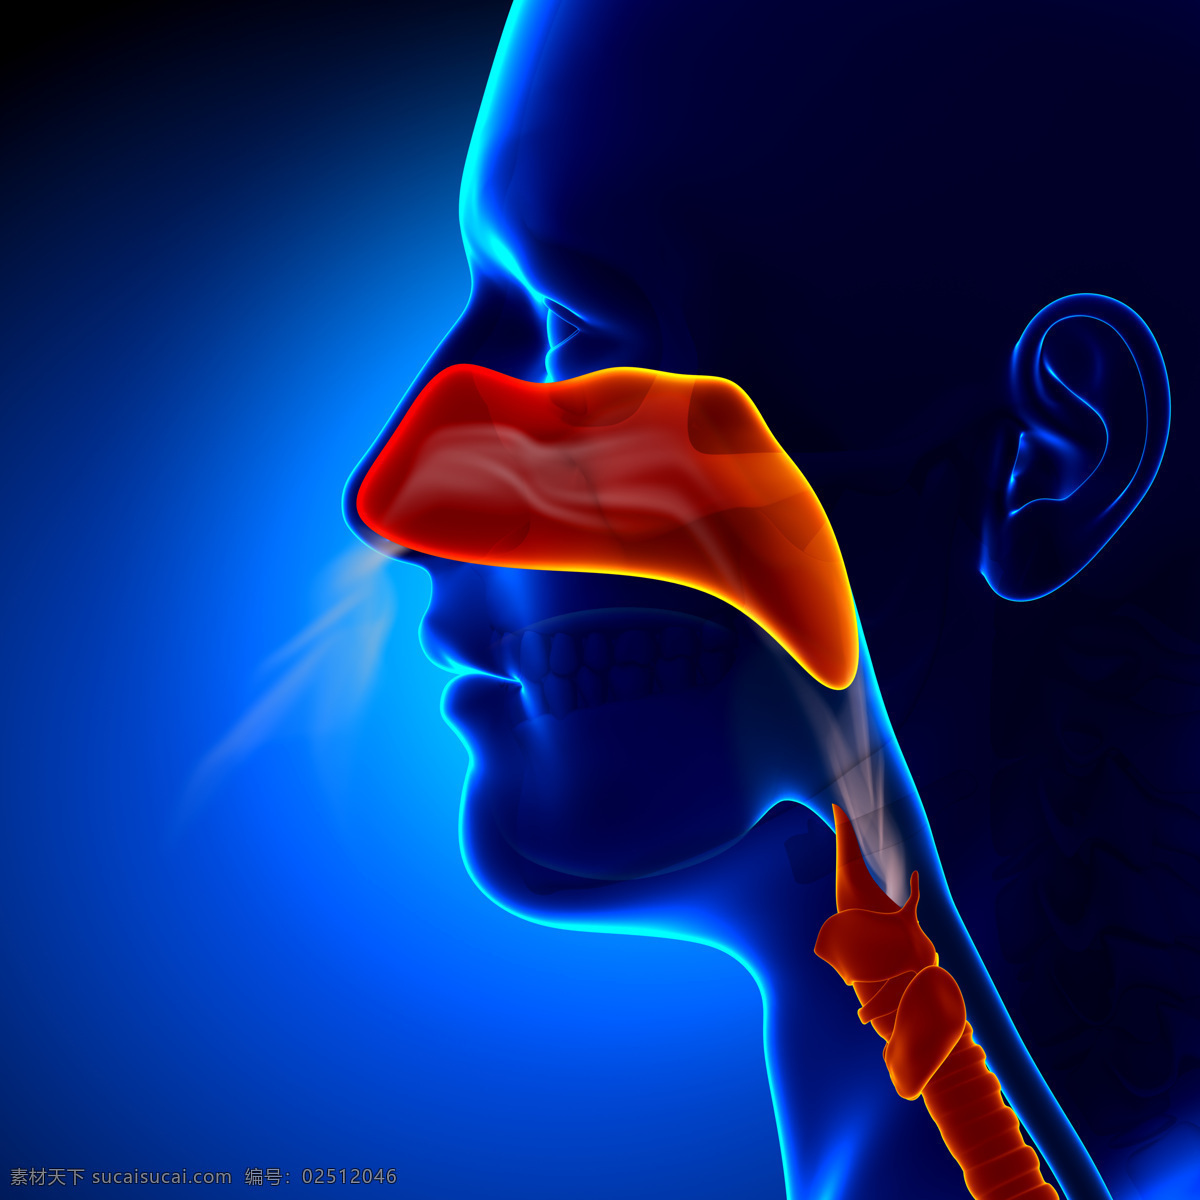 鼻子 咽喉 部位 鼻子咽喉部位 喉管 人体器官 身体 人类身体 绚光身体 其他人物 人物图库 医疗护理 现代科技